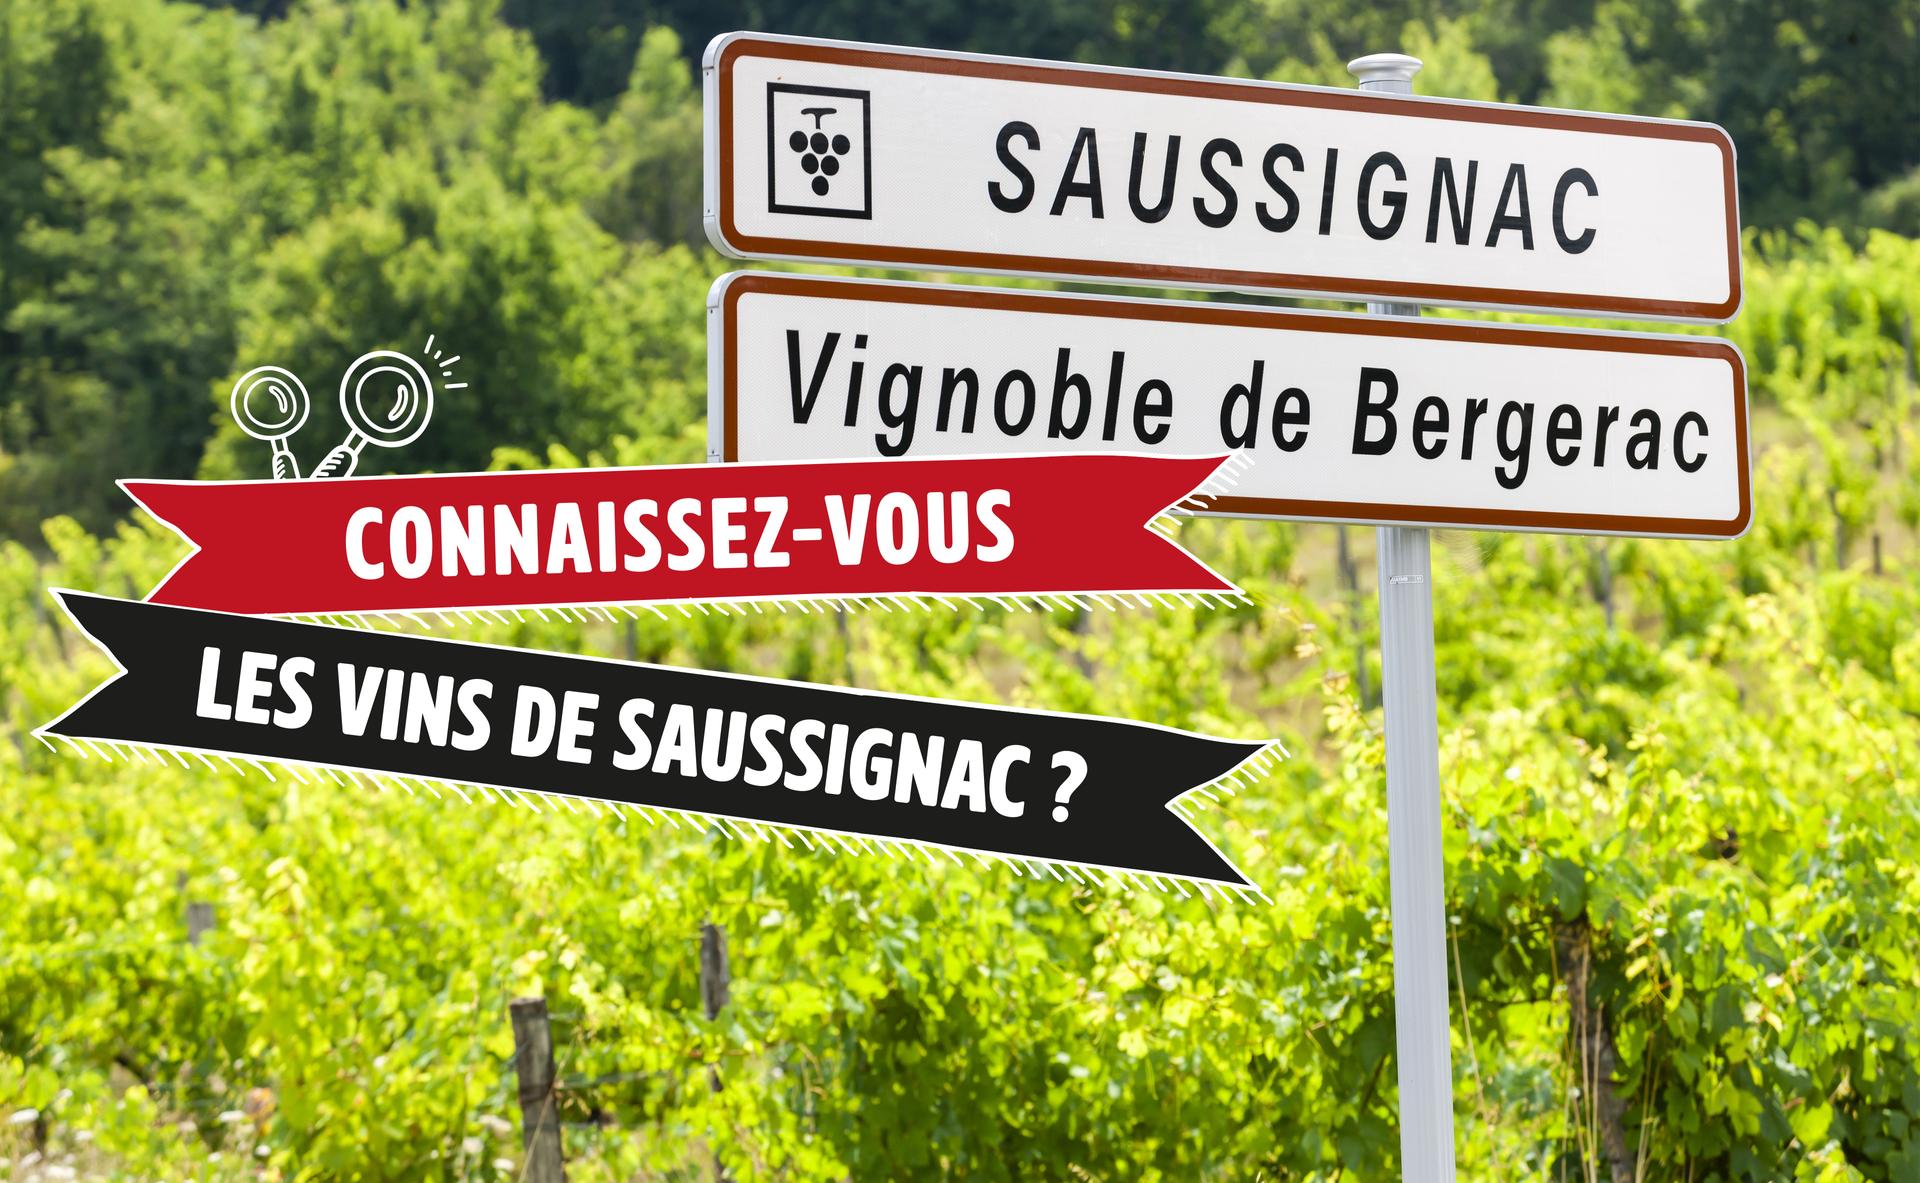 Connaissez-vous les vins de Saussignac ?